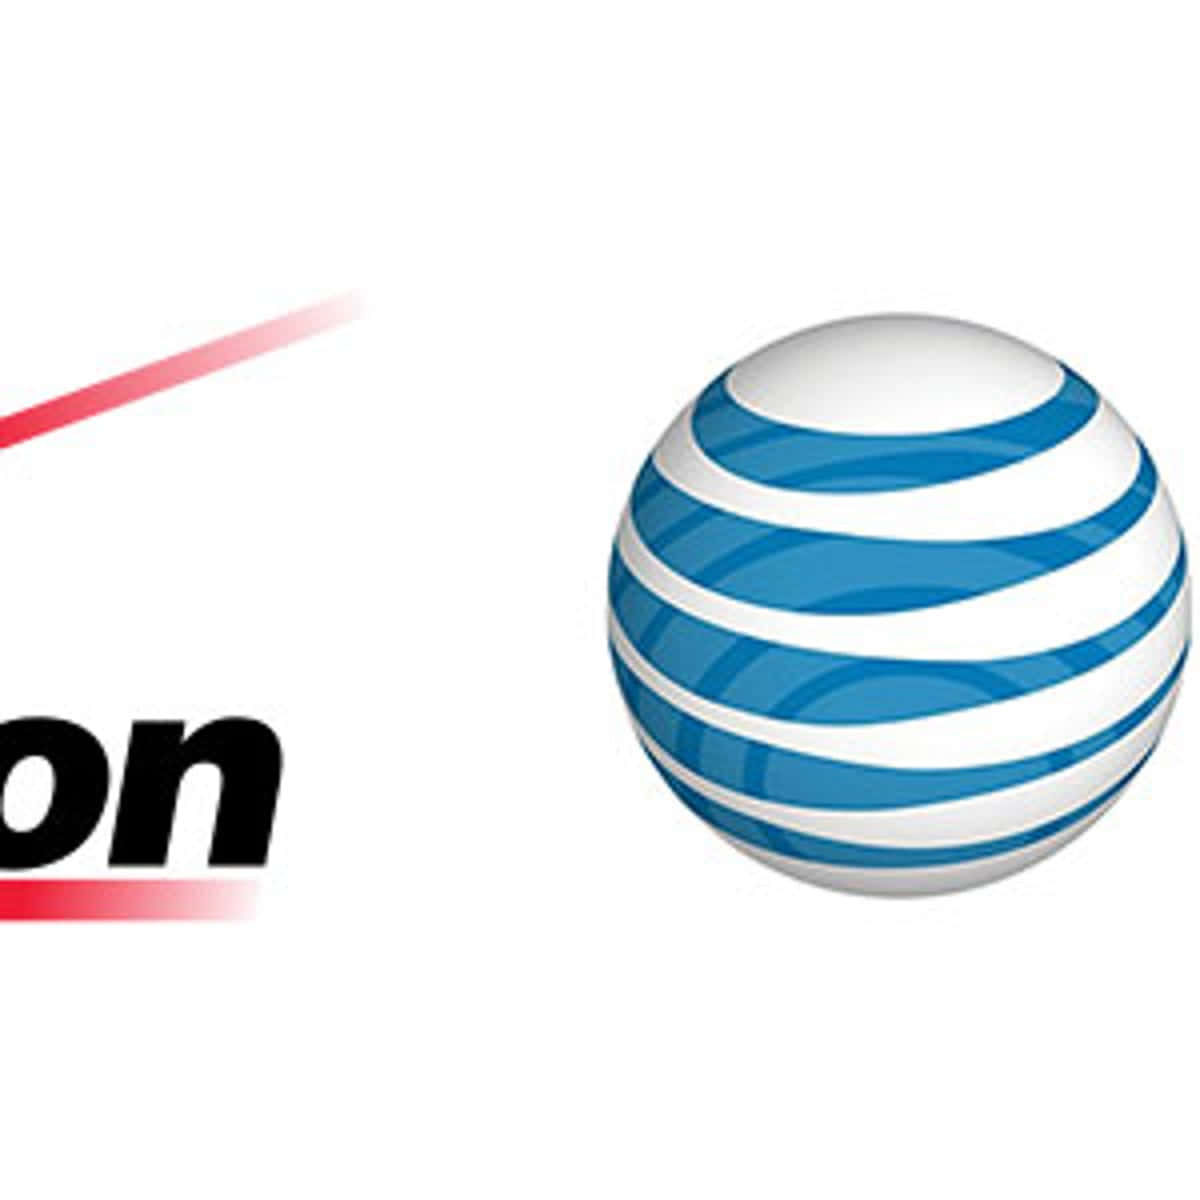 A Logo Of At&t And Verizon Wallpaper